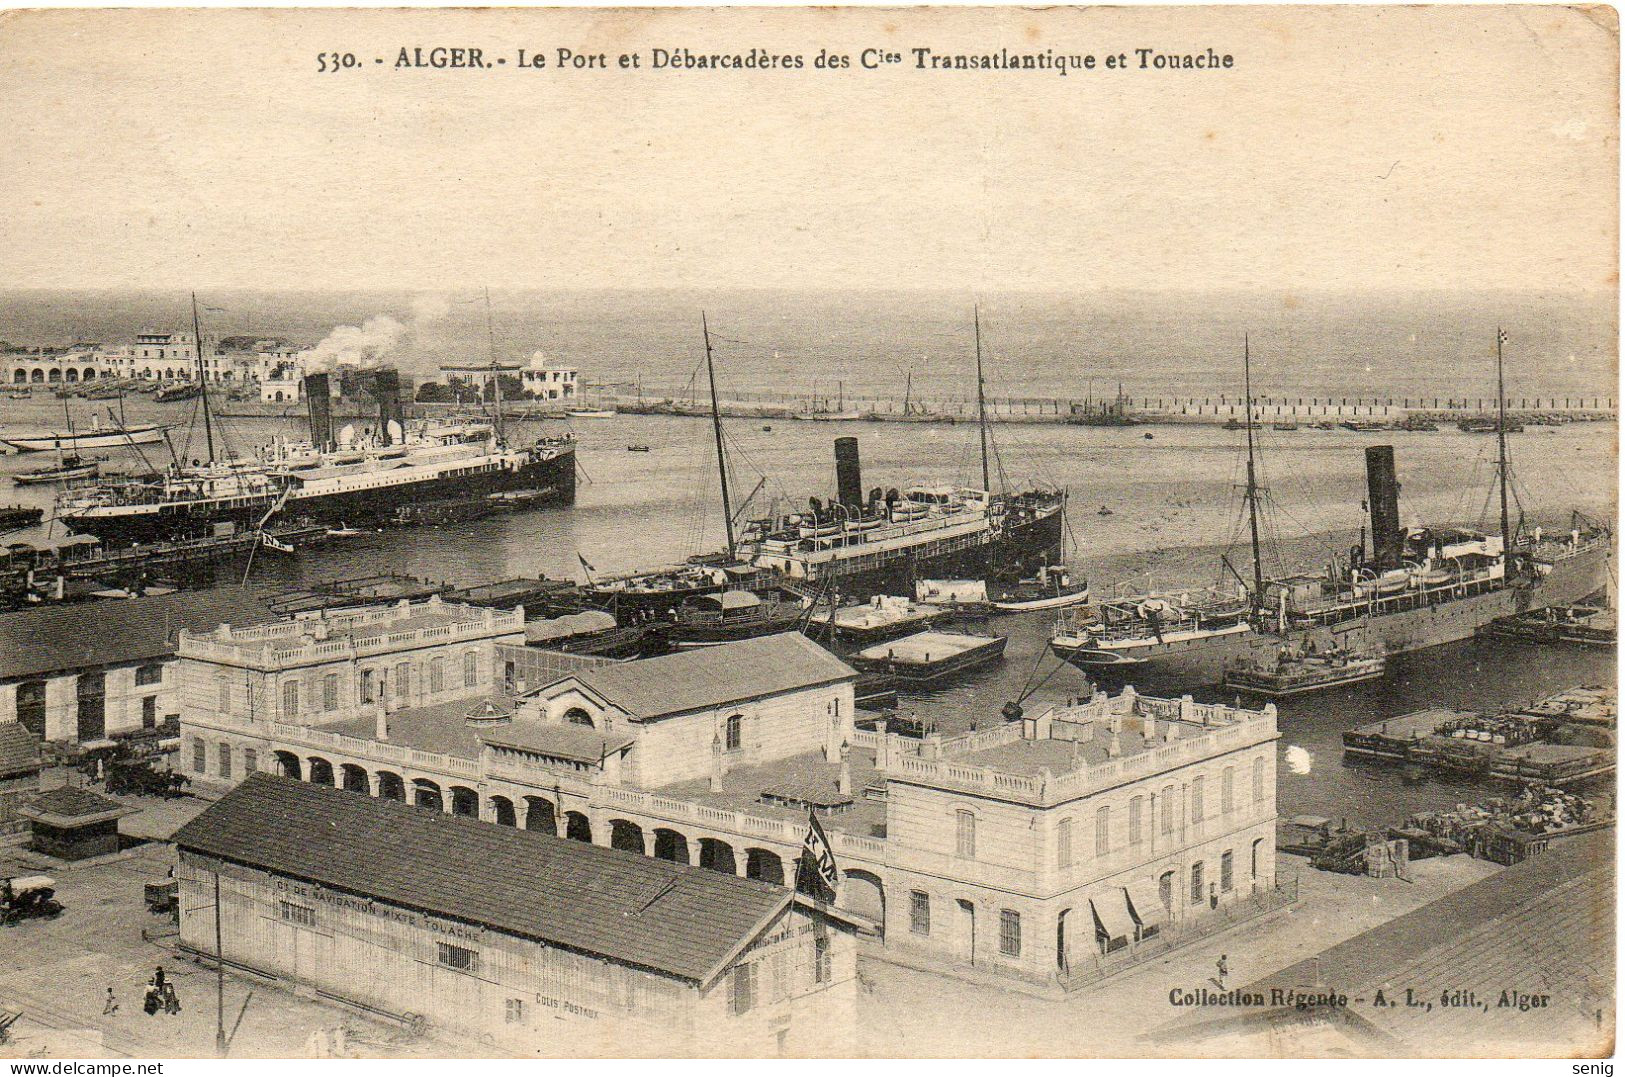 ALGERIE ALGER - 530 - Port Débarcadères Cies Transatlantique Touache - Collection Régence A. L. édit. Alger (Leroux) - Algiers